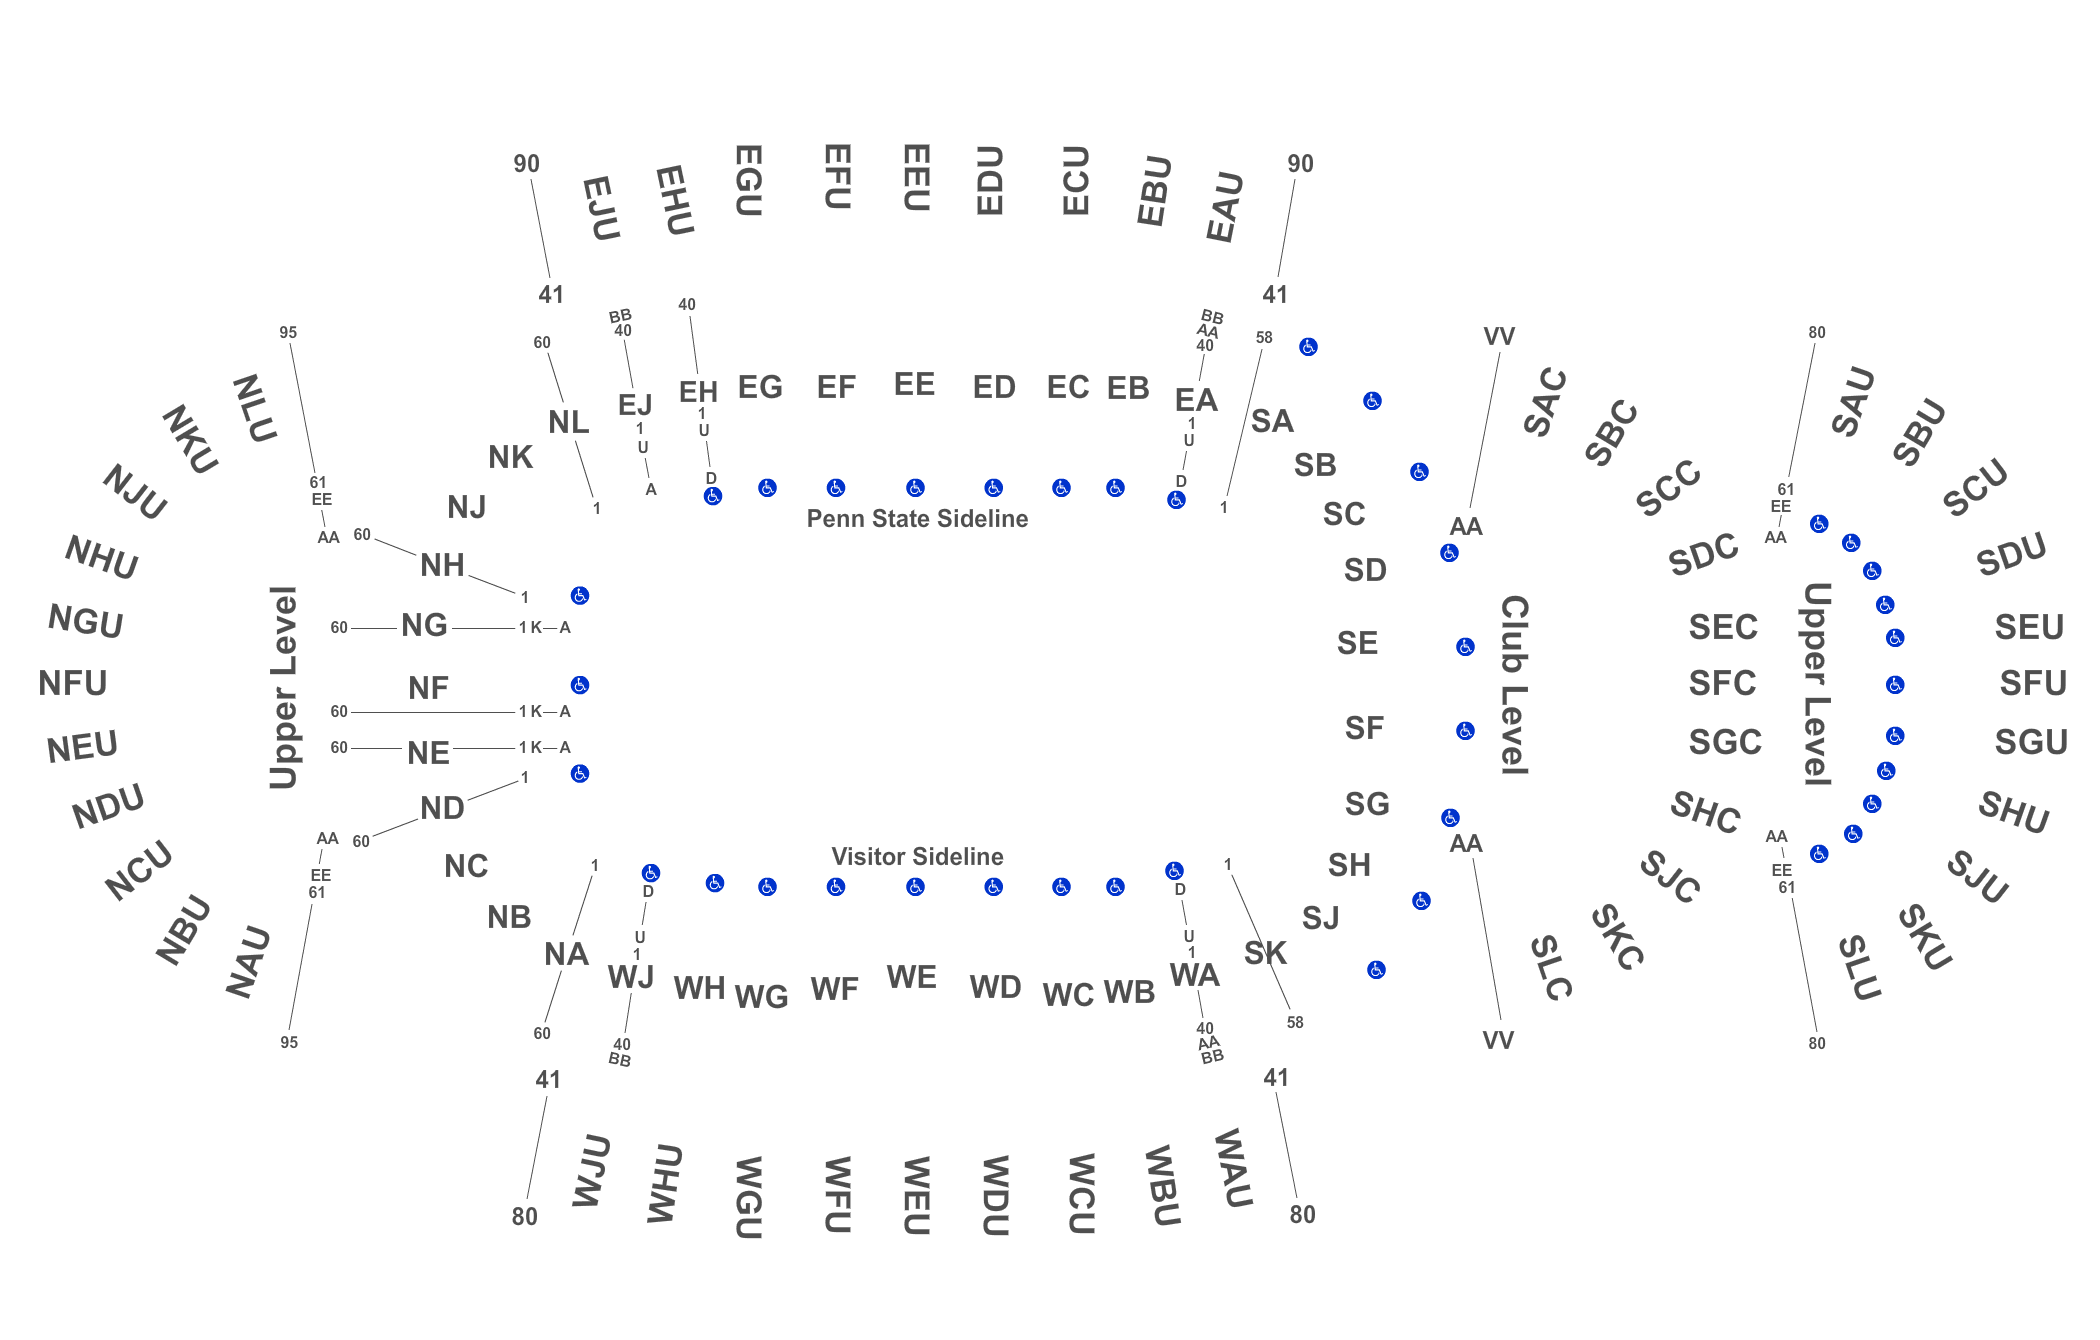 Beaver Stadium Football Seating Chart